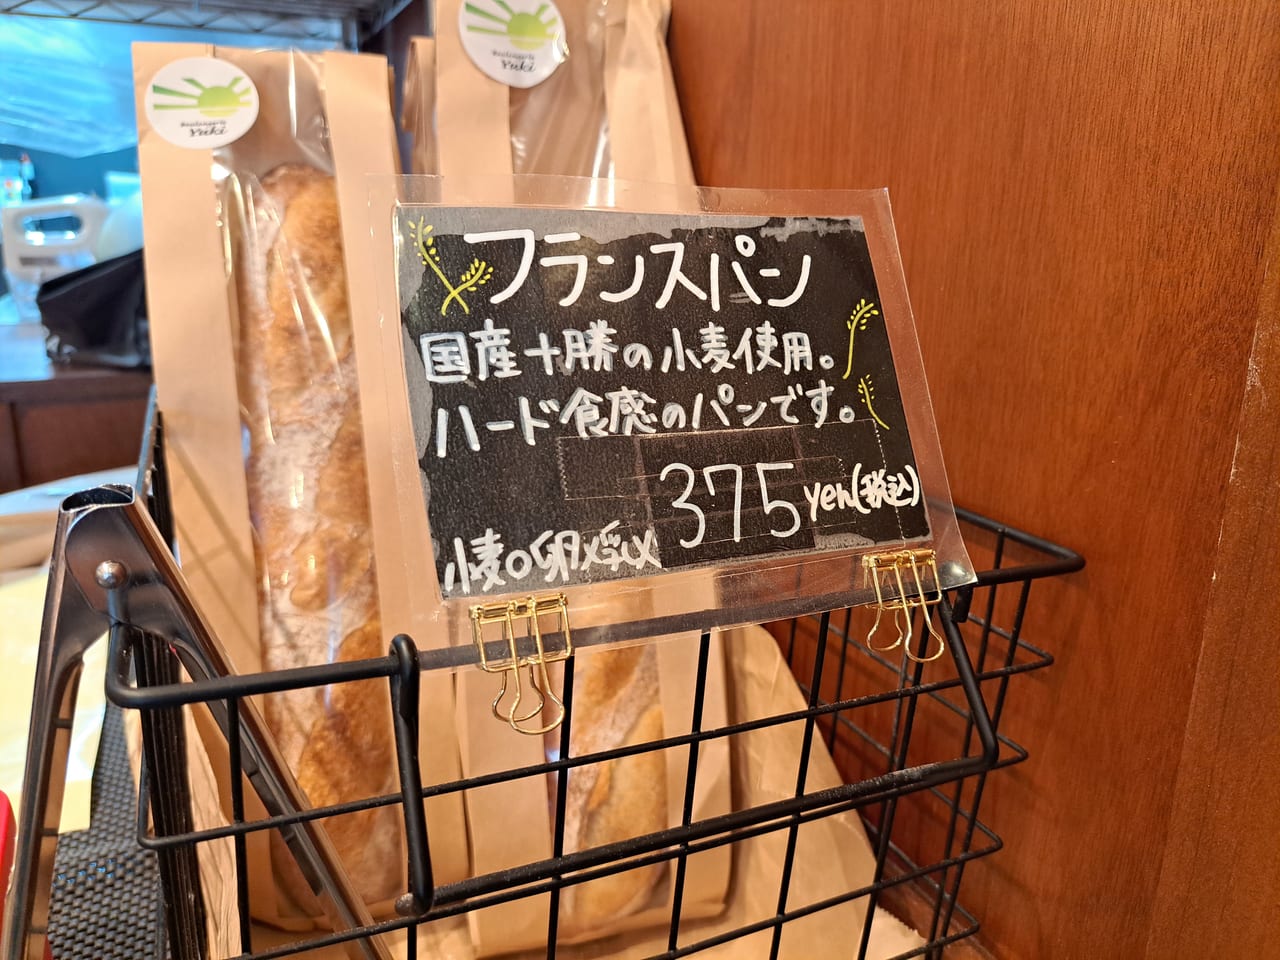 Boulangerie Yuki